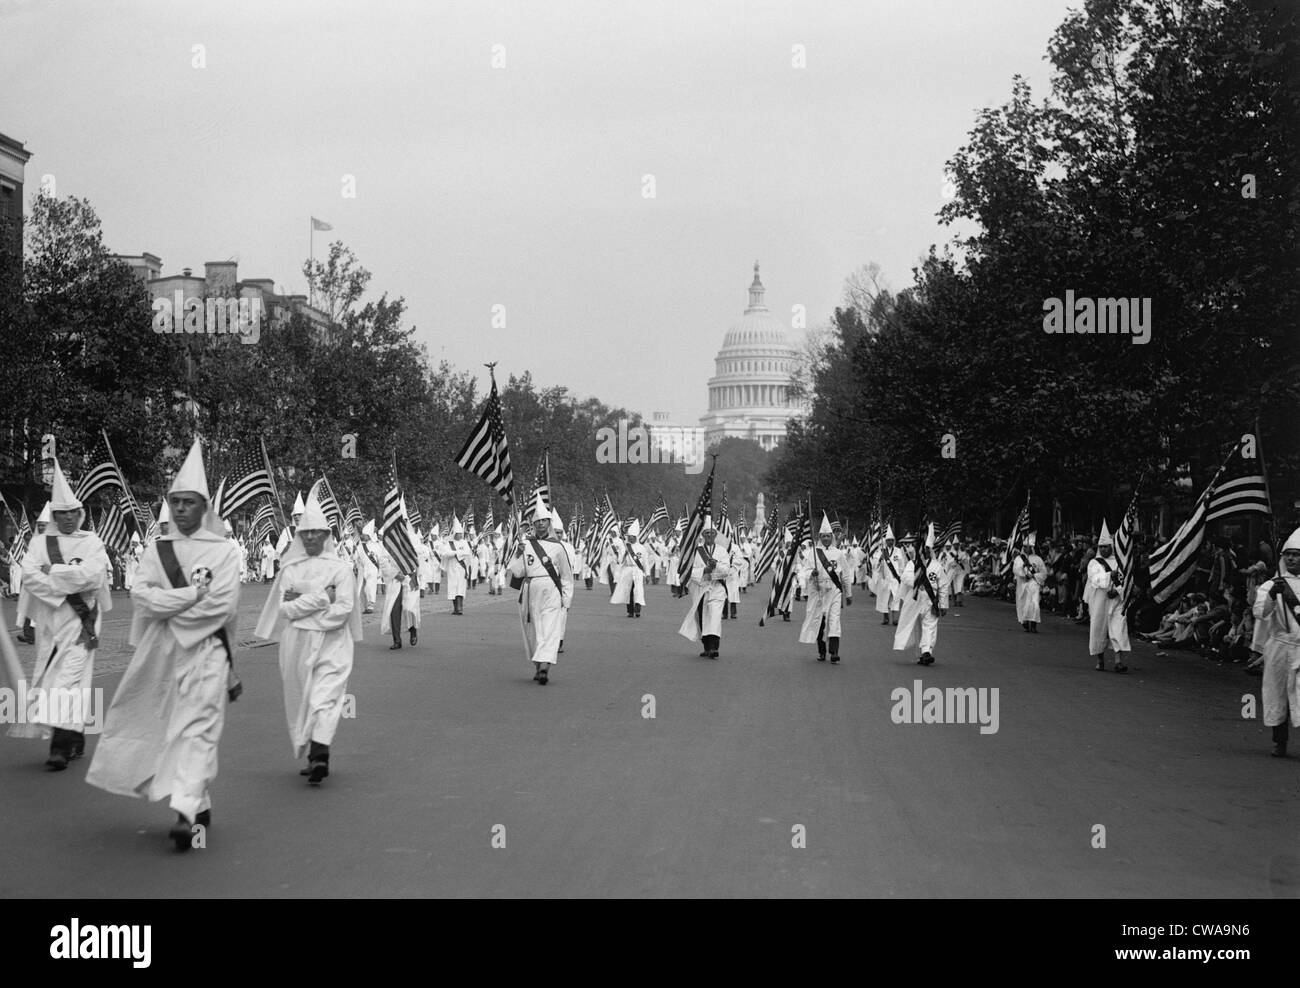 Ku Klux Klan parade à Washington D.C. en 1926, à l'apogée de sa popularité renaissante dans les années 1920. Banque D'Images